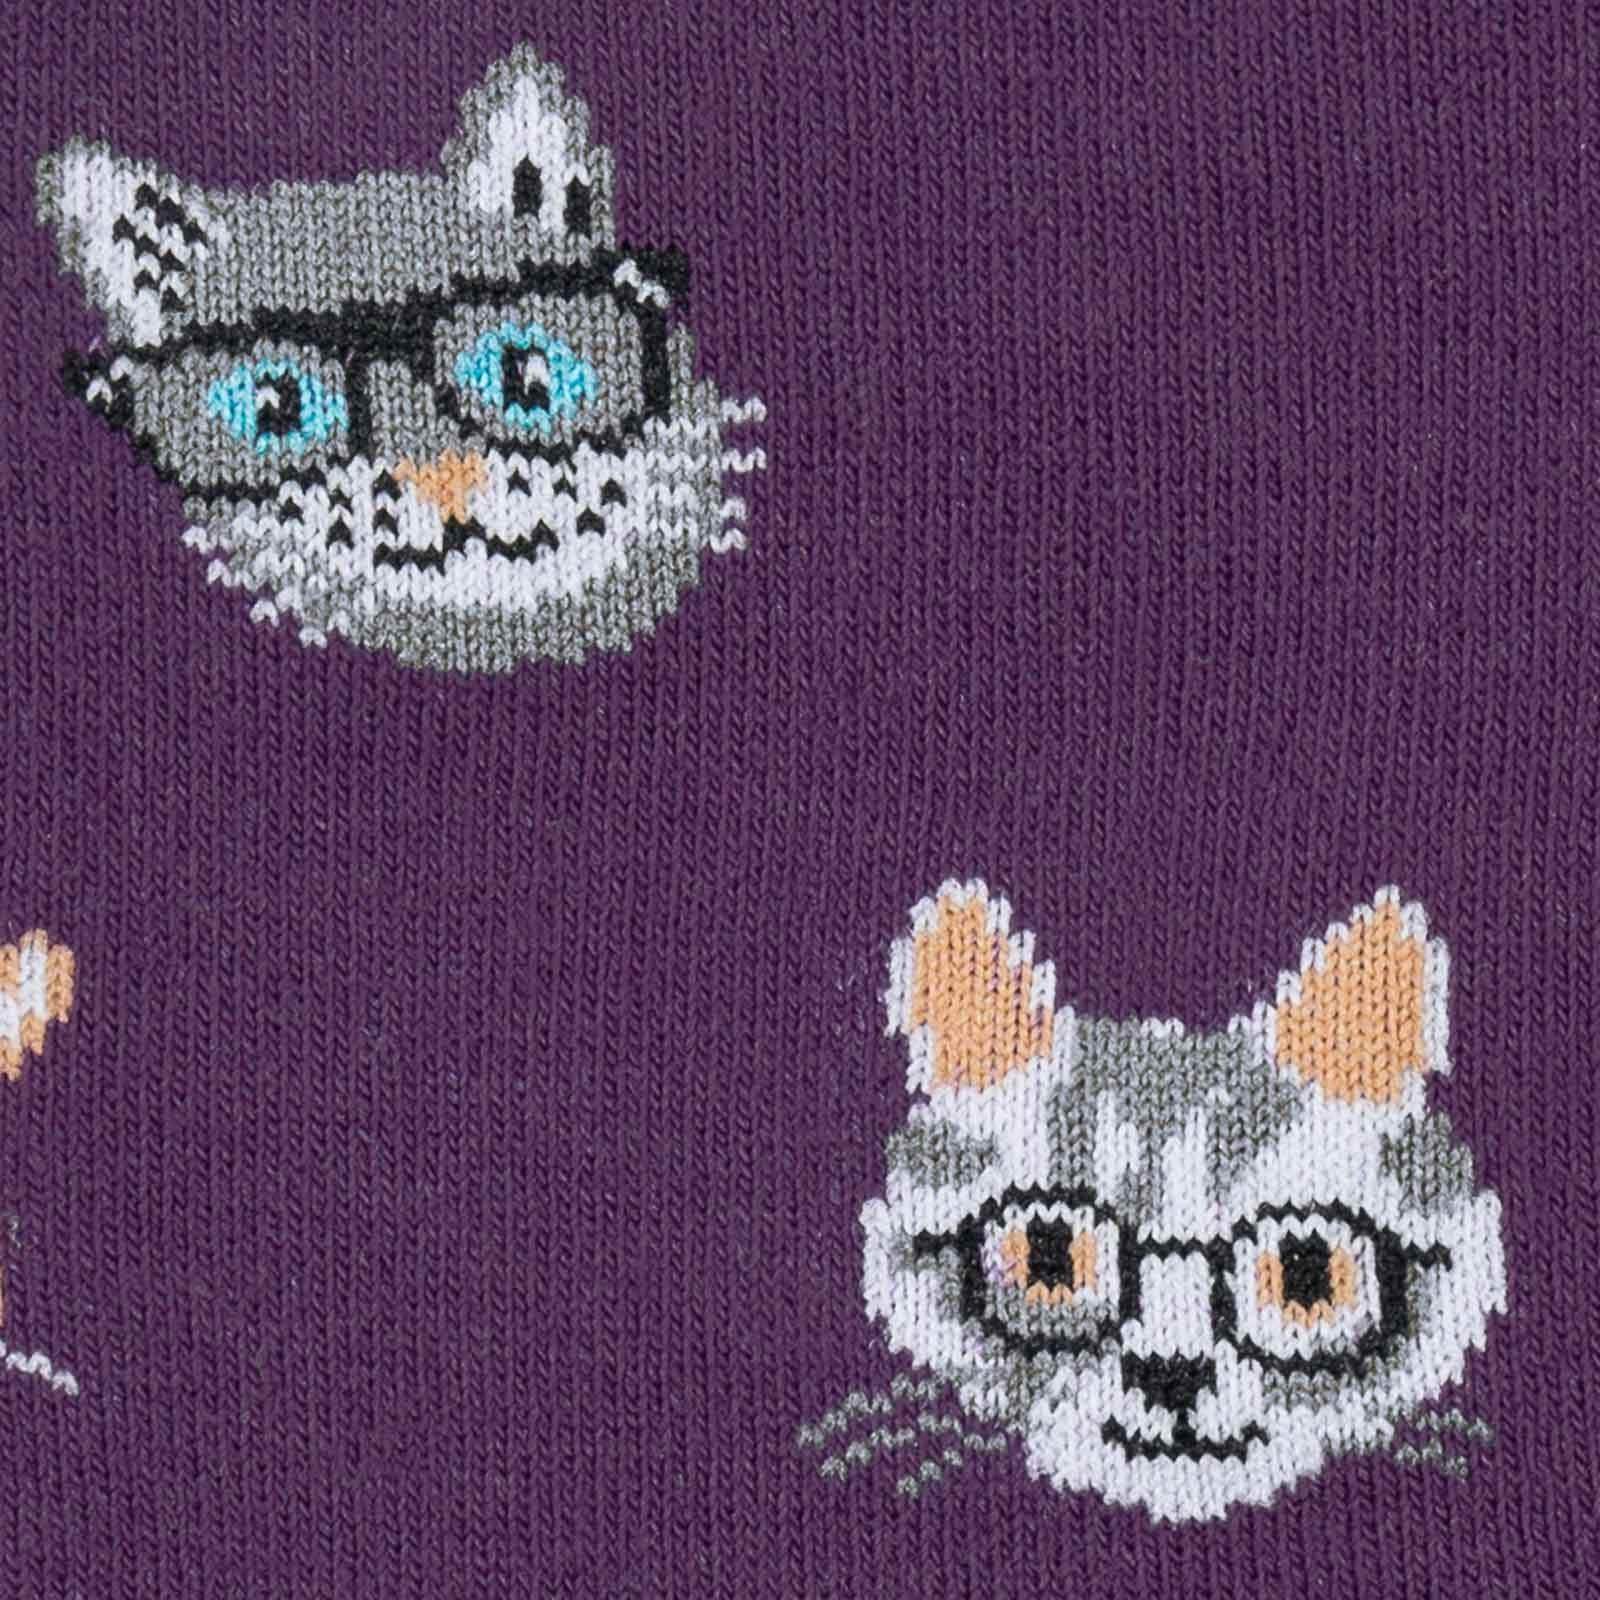 Smarty Cats Socks Women's Crew Sock Purple